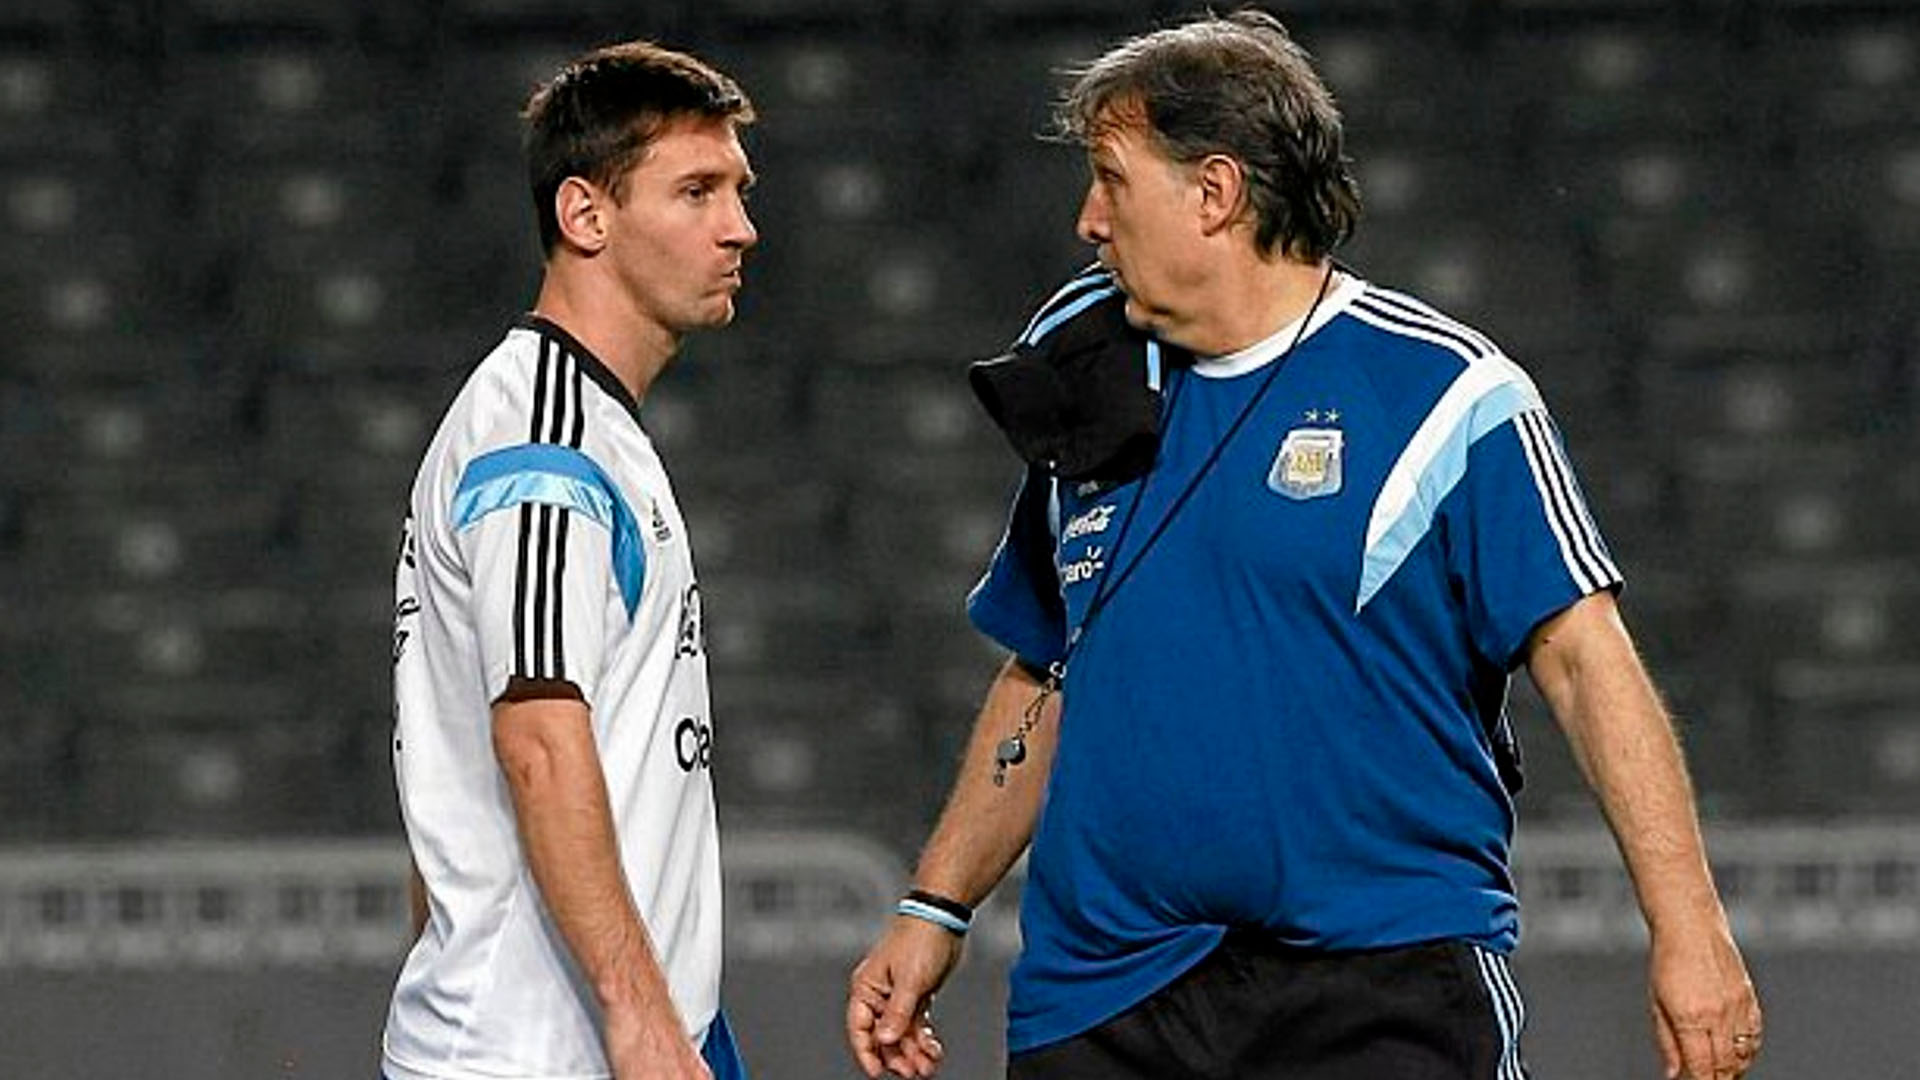 Martino también dirigió a Messi en la selección argentina por dos años, del 2014 al 2016